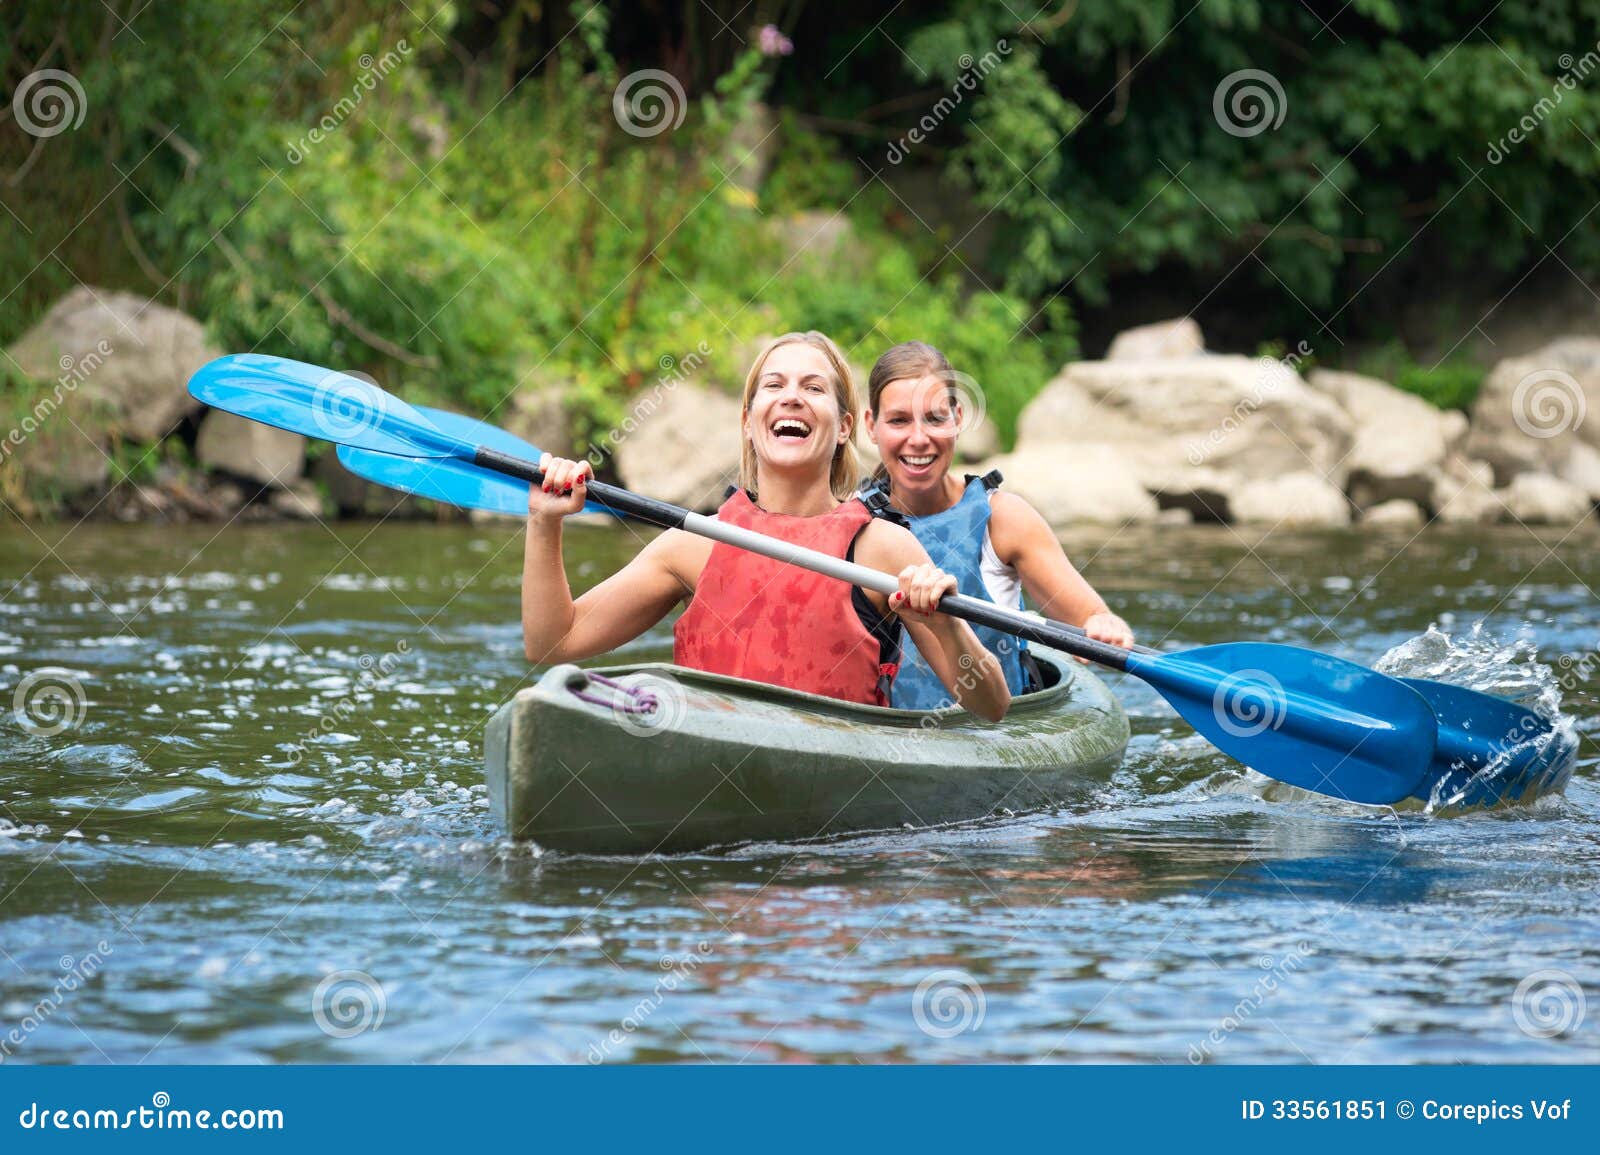 women kayaking